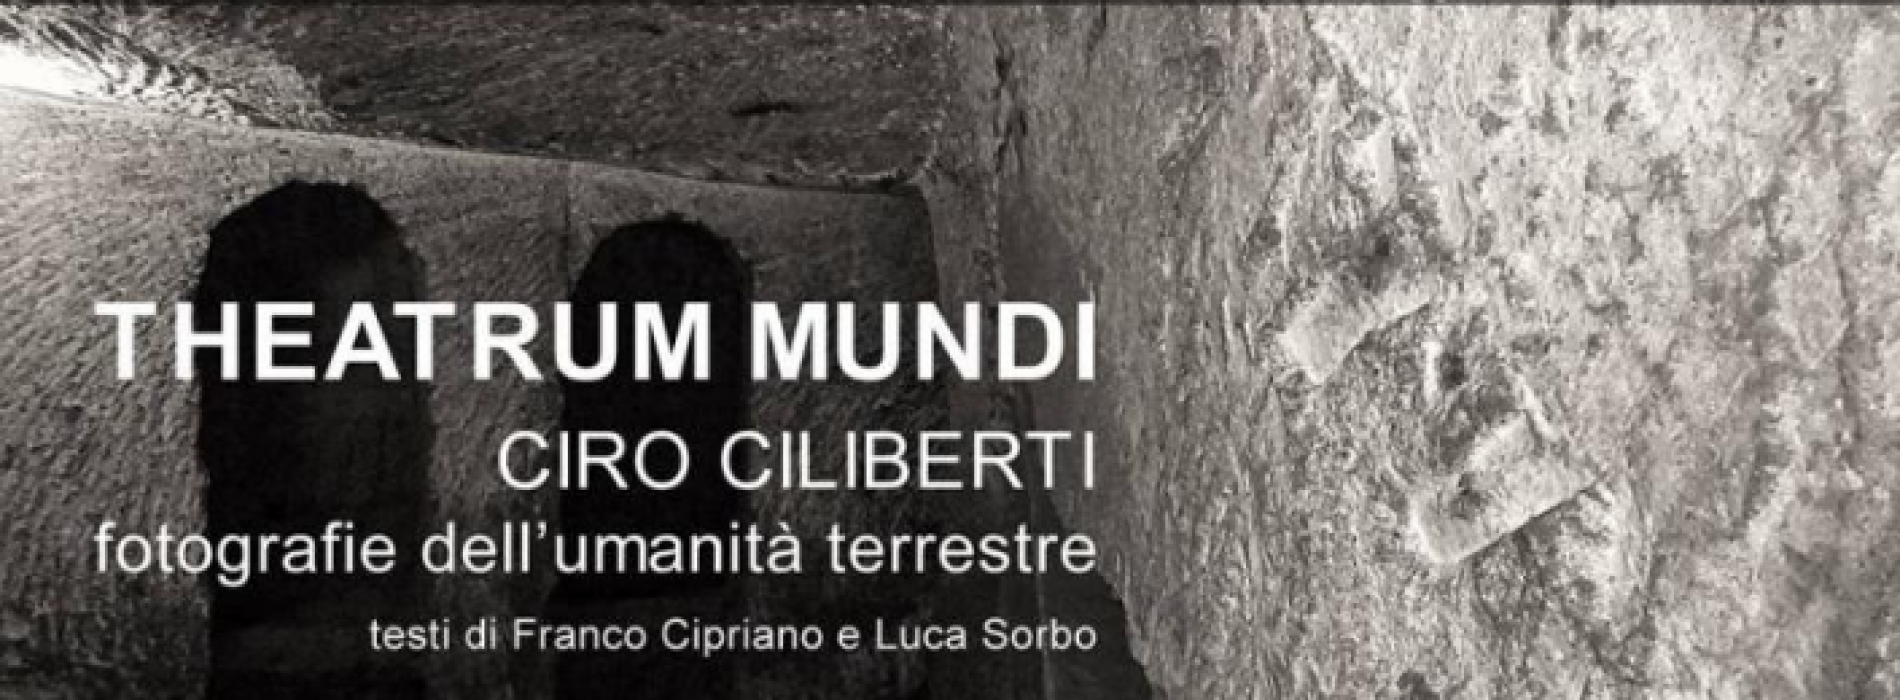 Theatrum Mundi di Ciro Ciliberti al Museo del Sottosuolo di Napoli